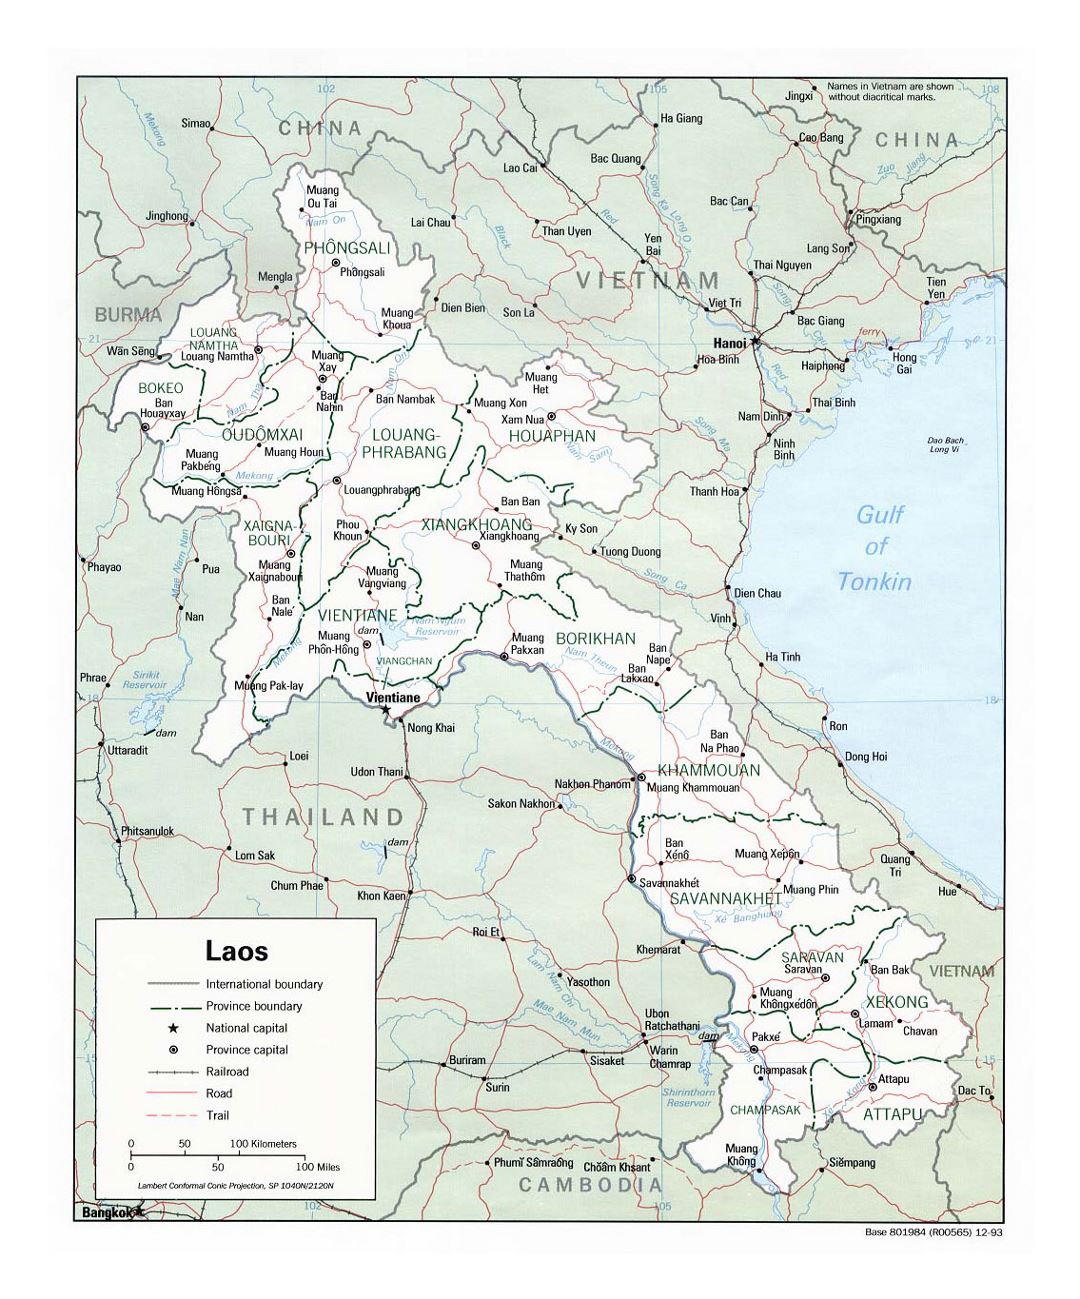 Детальная политическая и административная карта Лаоса с дорогами, железными дорогами и крупными городами - 1993